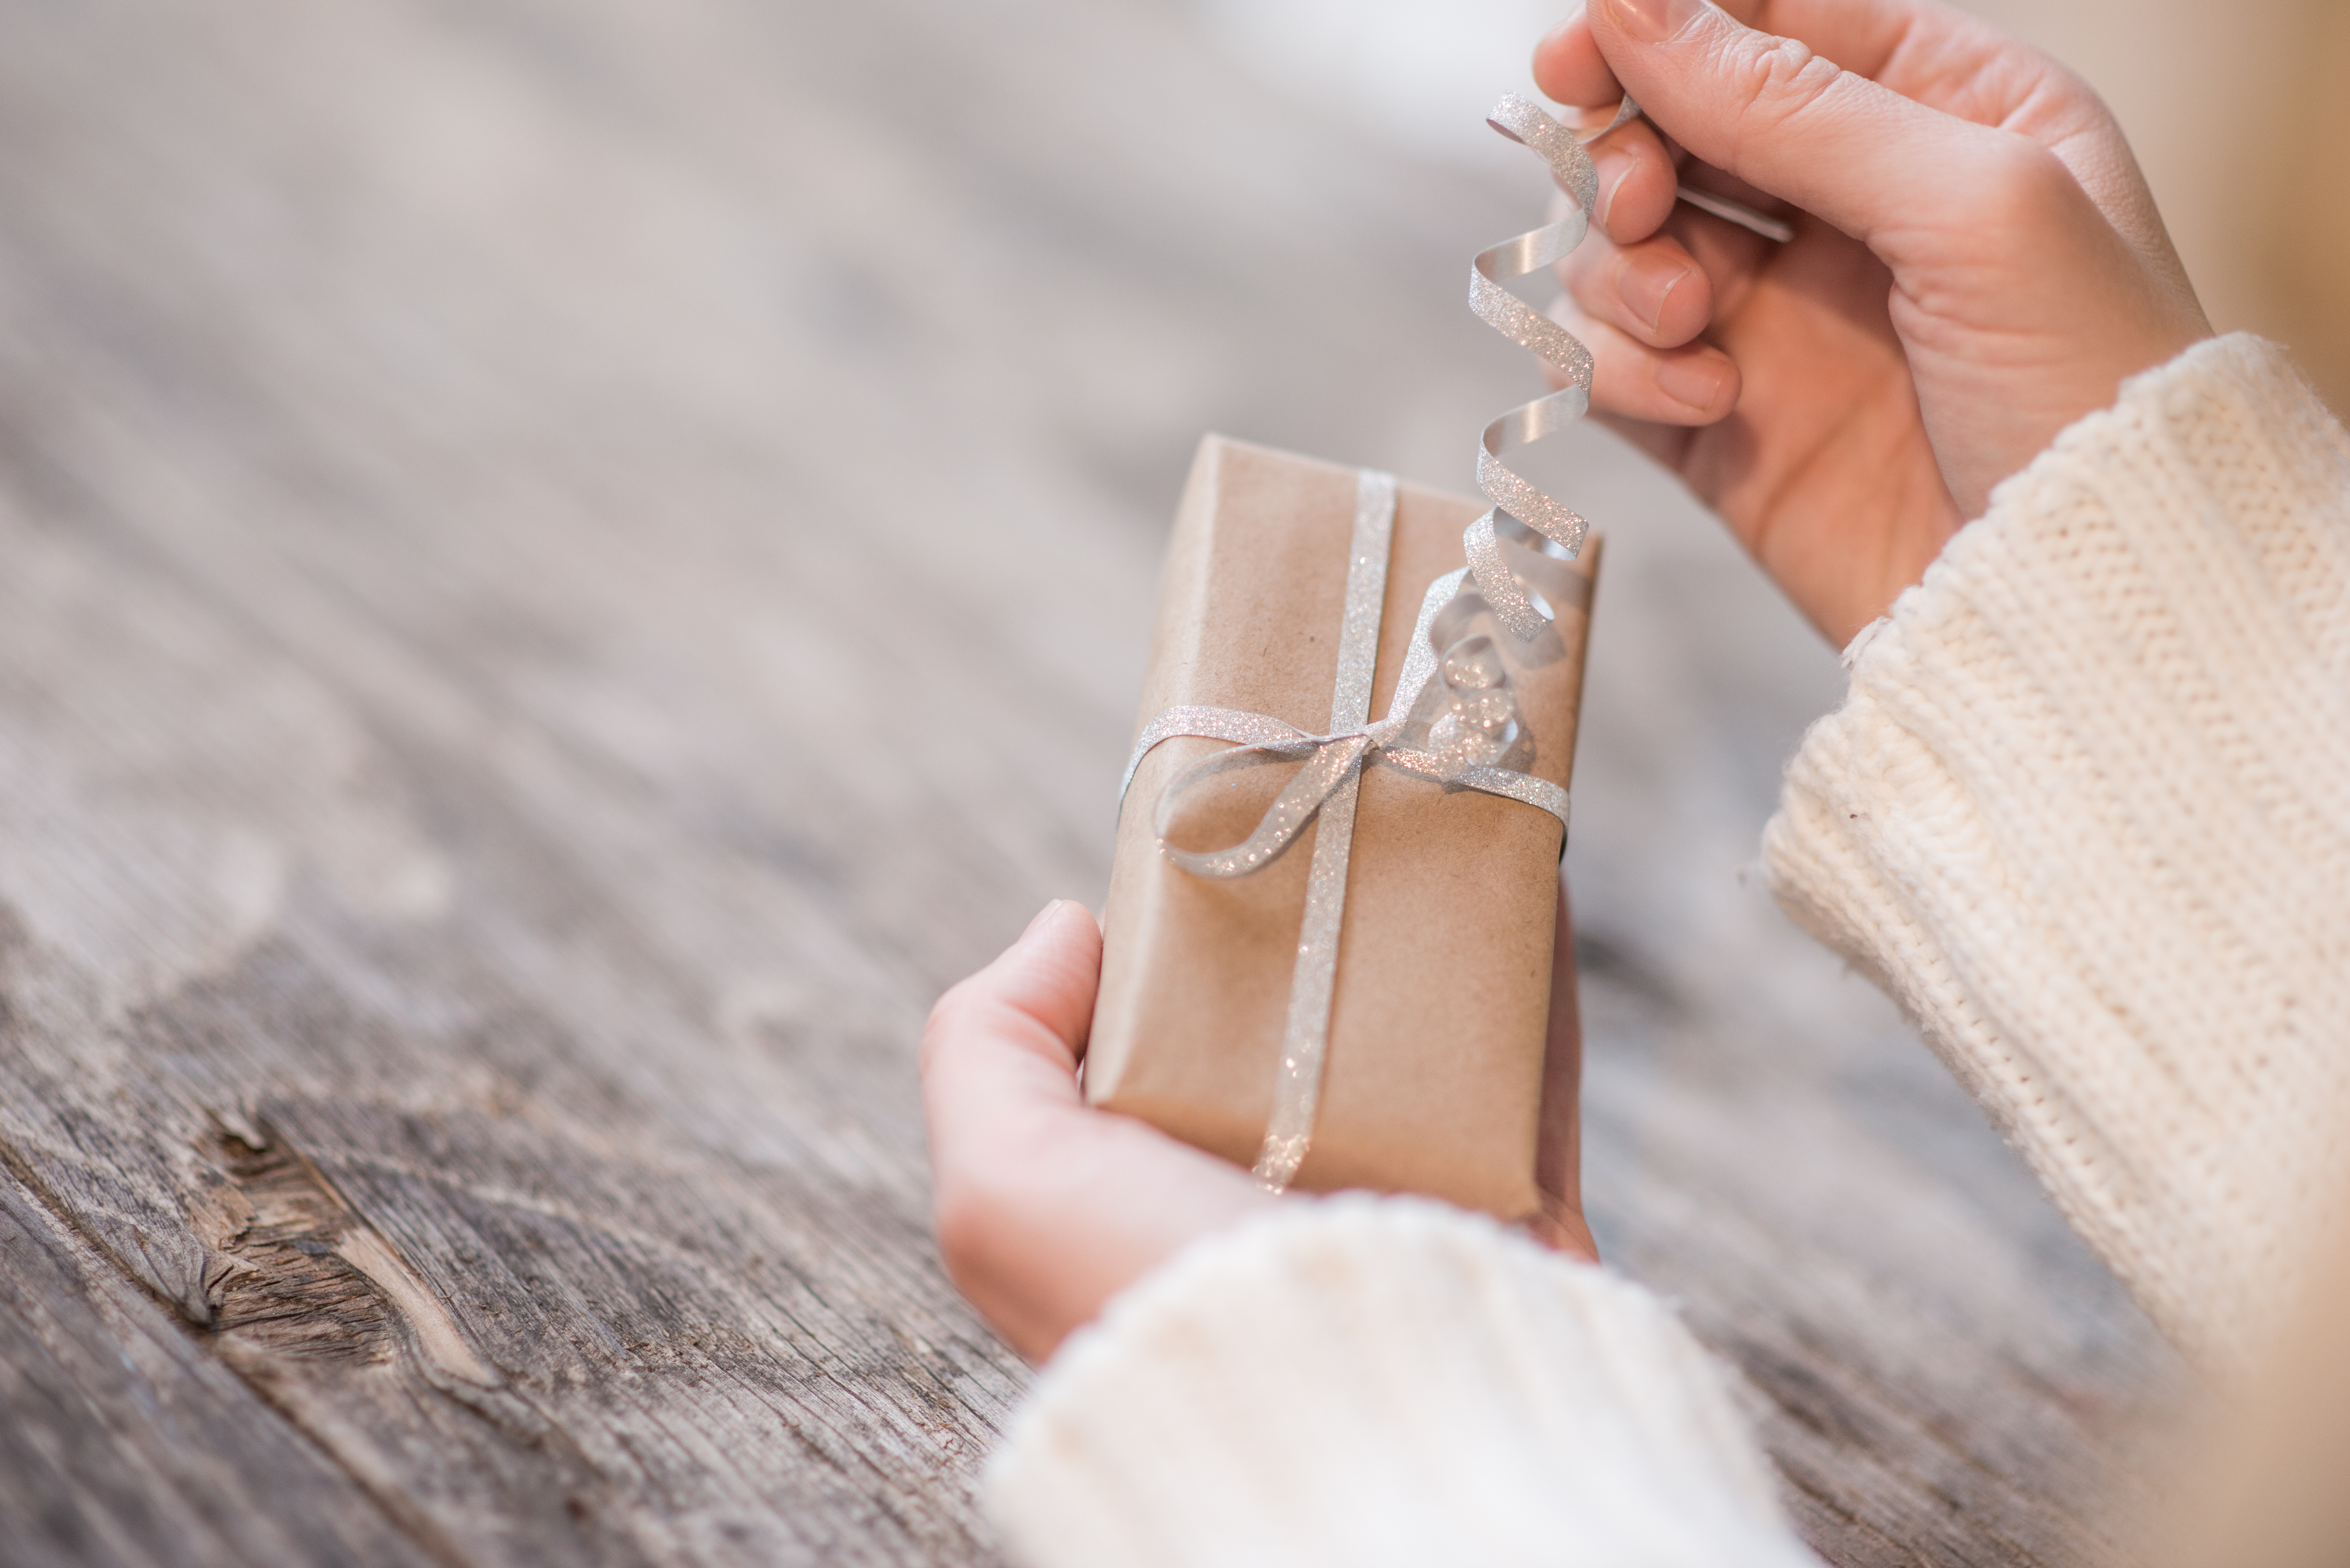 Une femme qui ouvre un cadeau | Source : Shutterstock